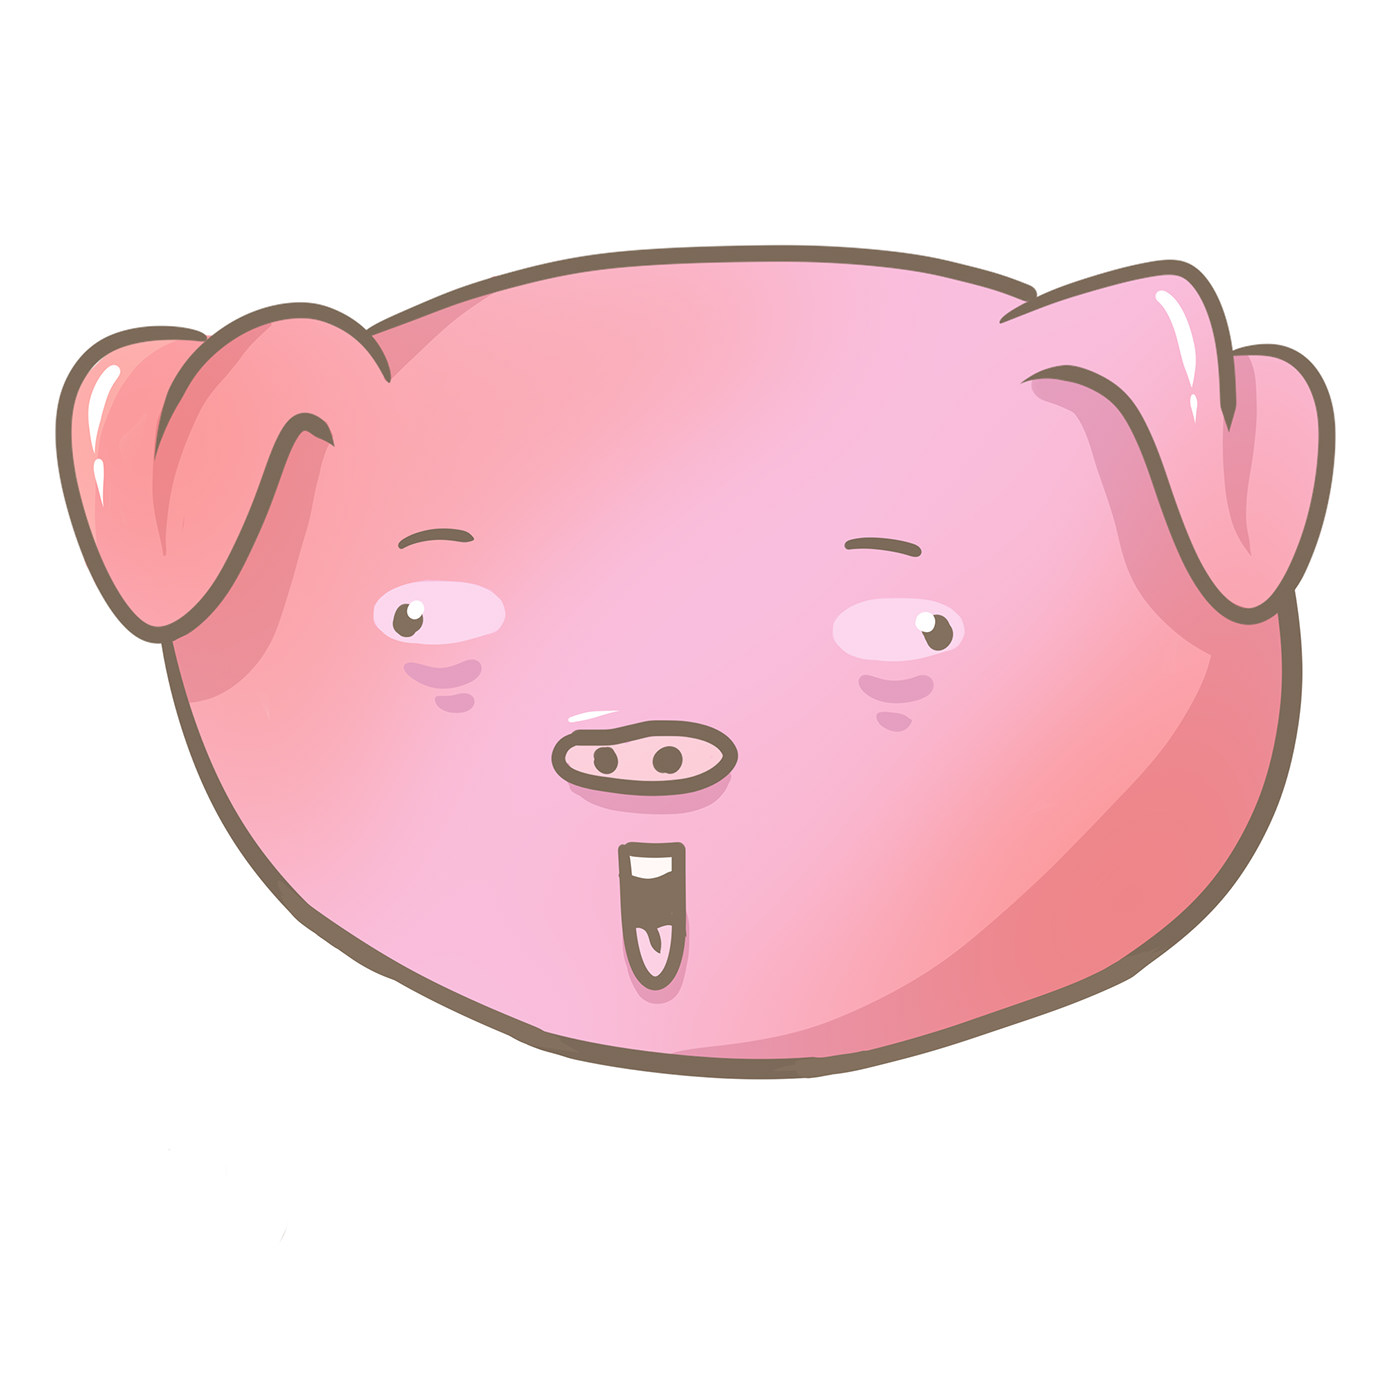 pig cute pig wow pink cute ILLUSTRATION  art sai cute animals piggy